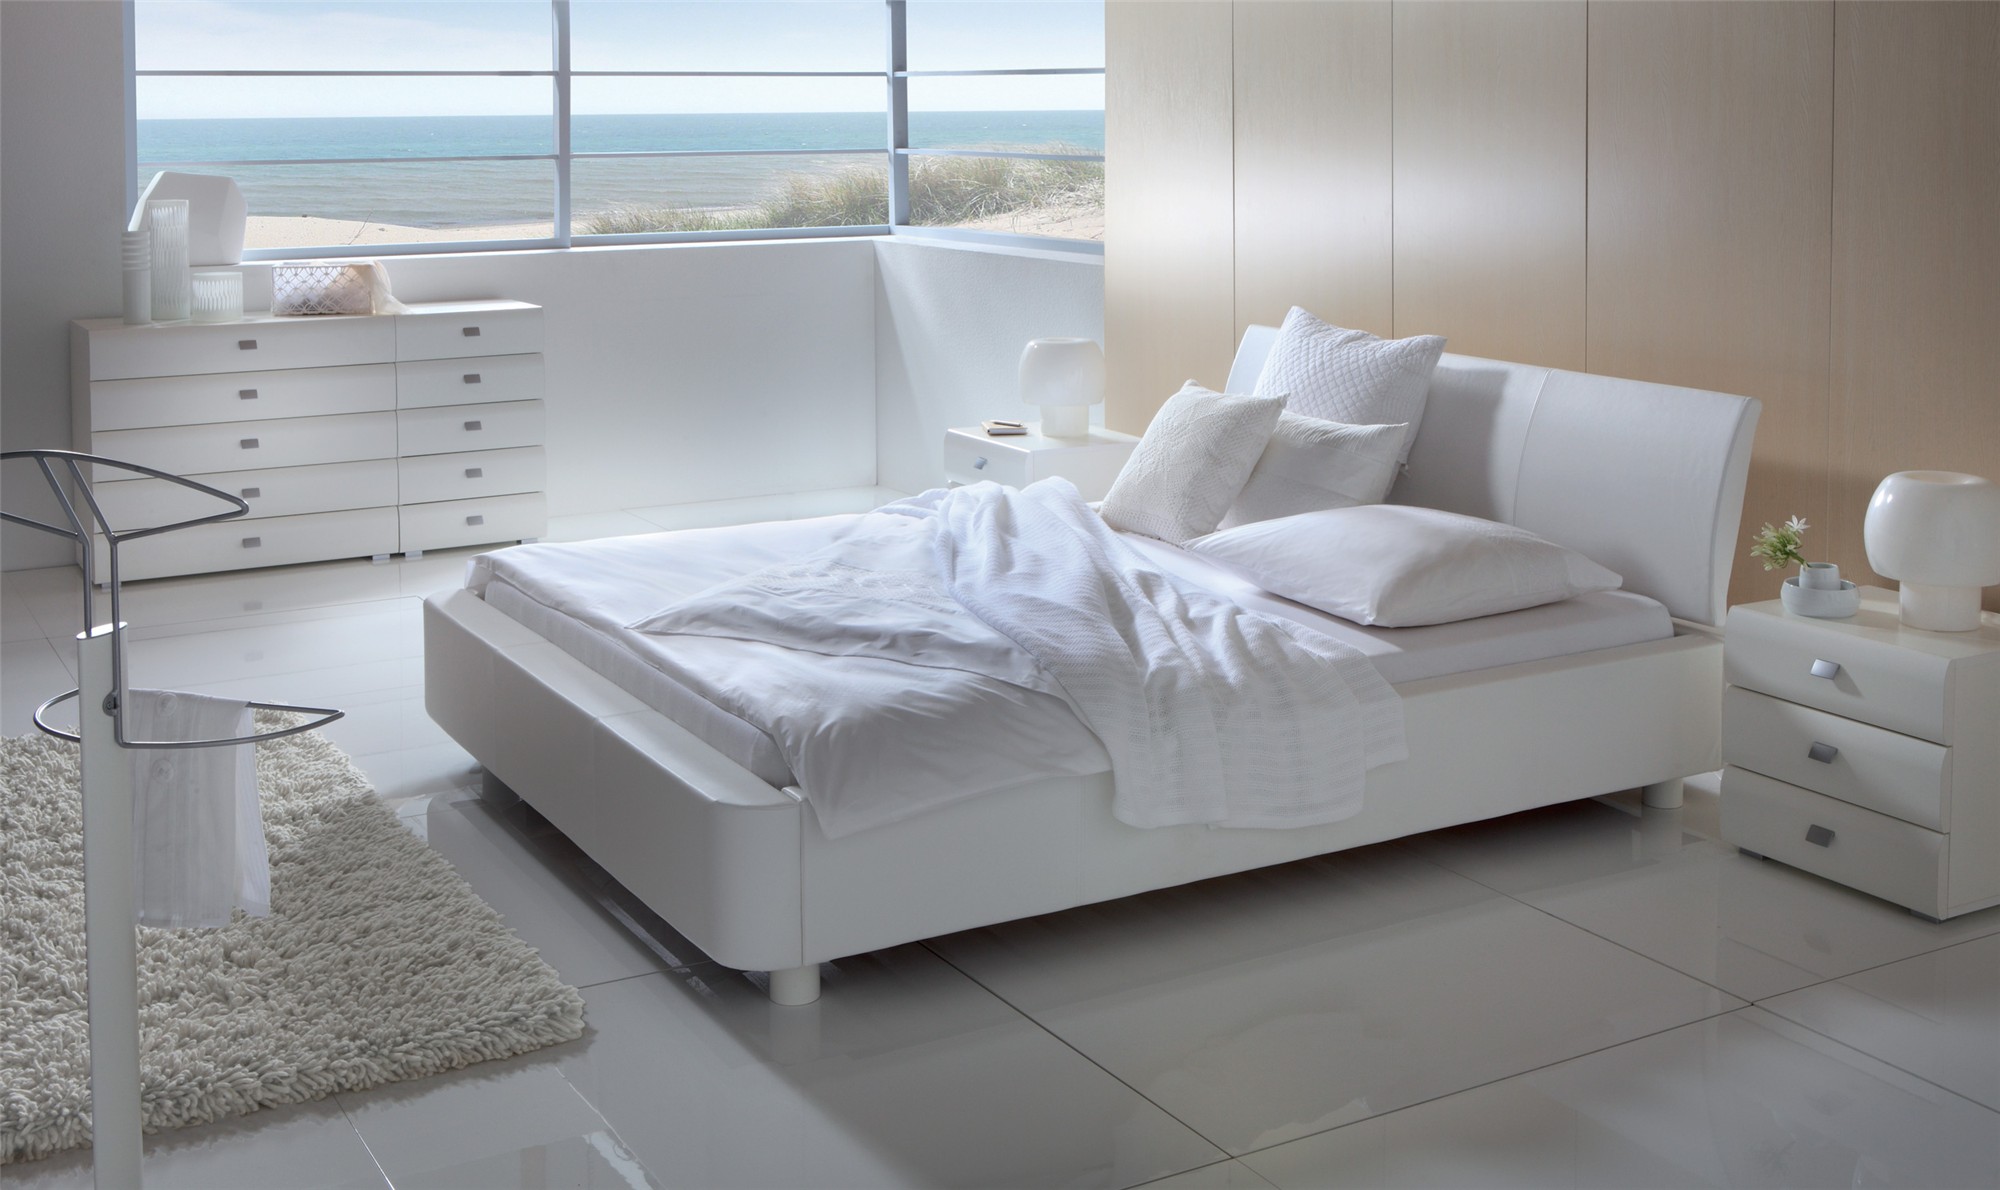 Camera da letto bianca: stile minimal e di tendenza per i tuoi sonni